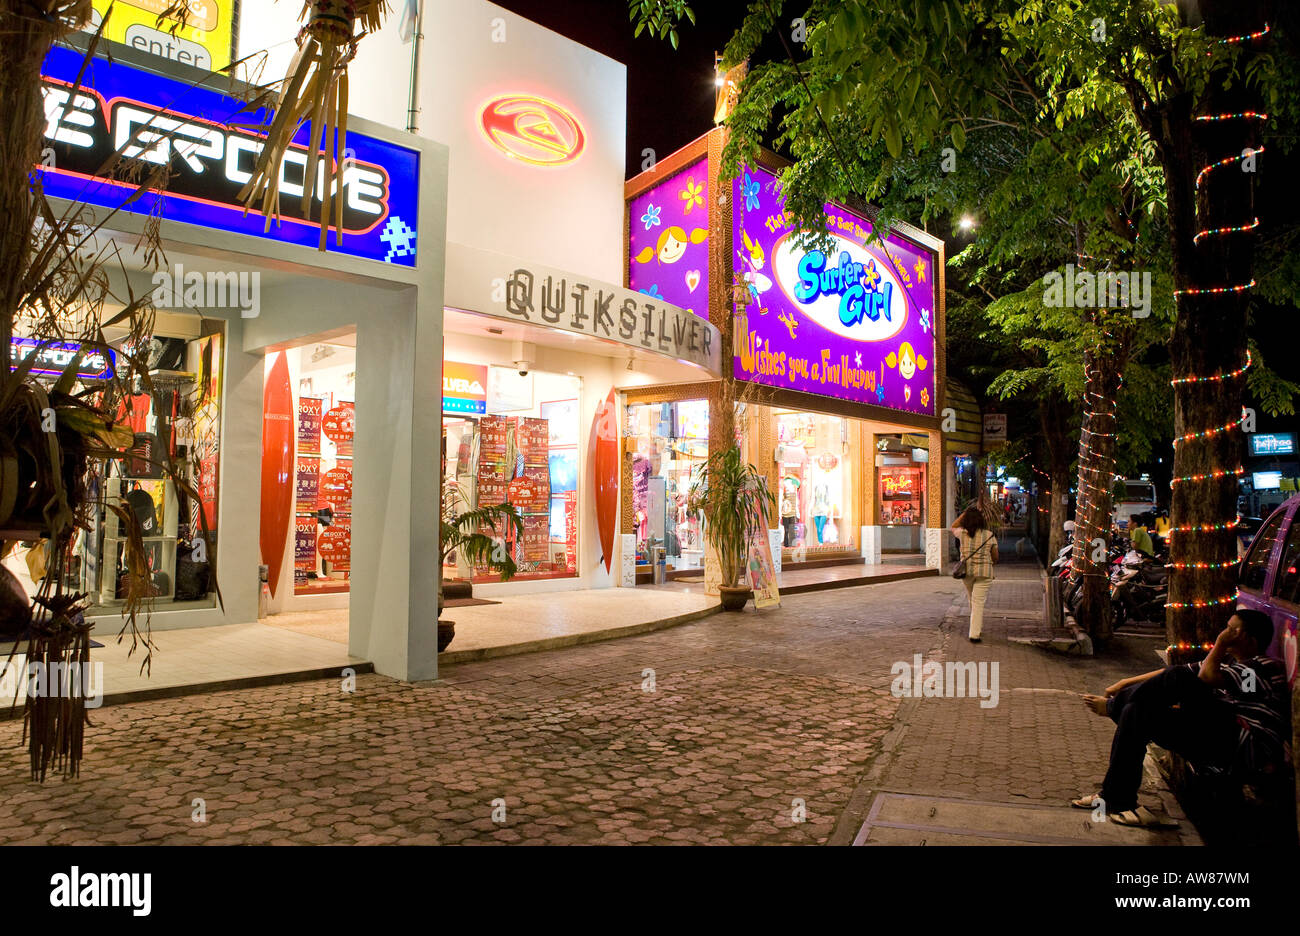 Surfer Girl Shop la nuit dans le centre ville  de Kuta  